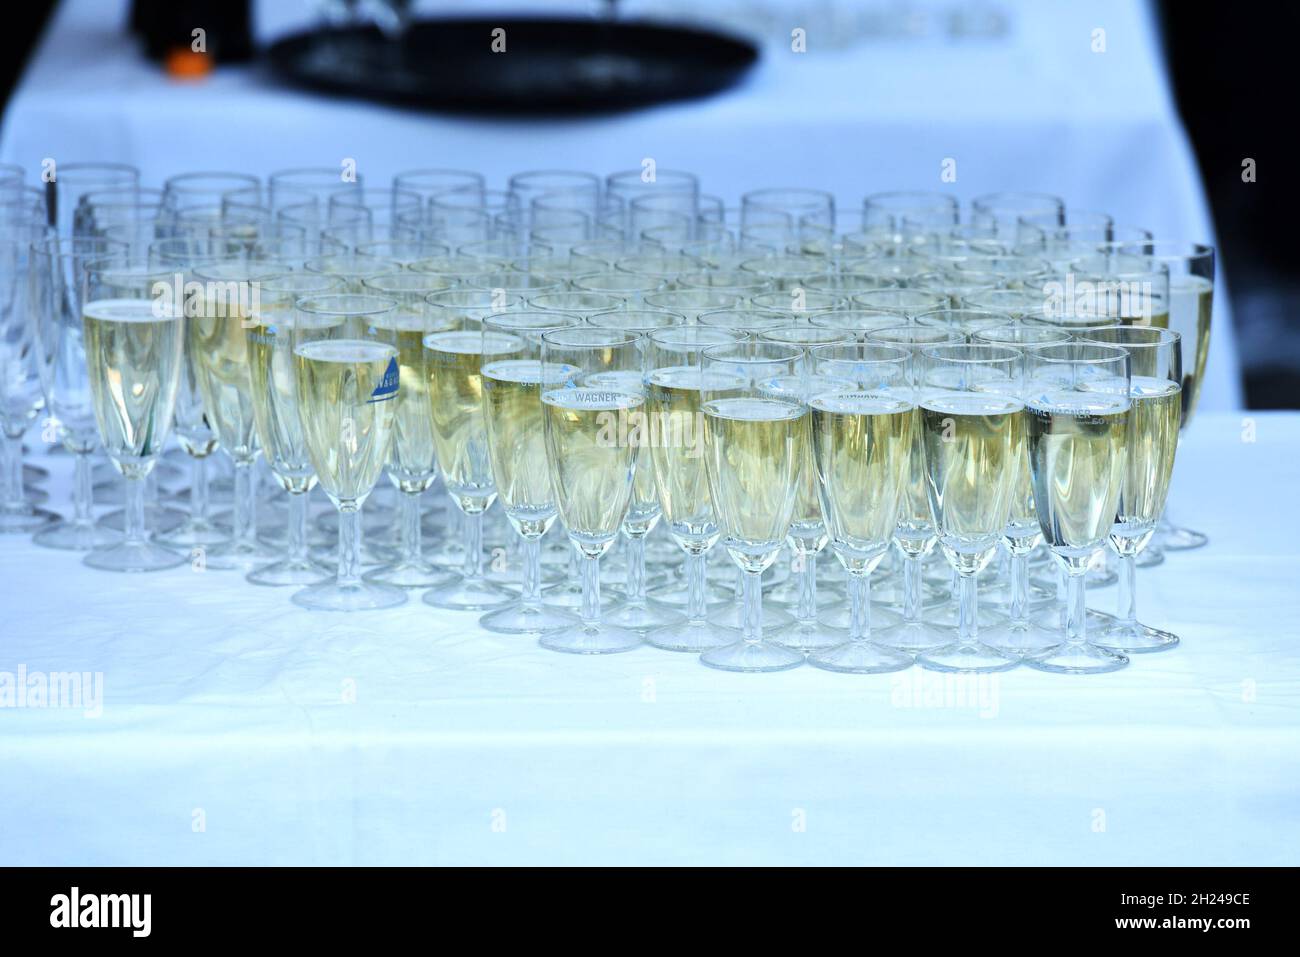 Viele gefüllte Sektgläser BEI einer Feier - de nombreuses coupes de champagne farcies à une célébration Banque D'Images